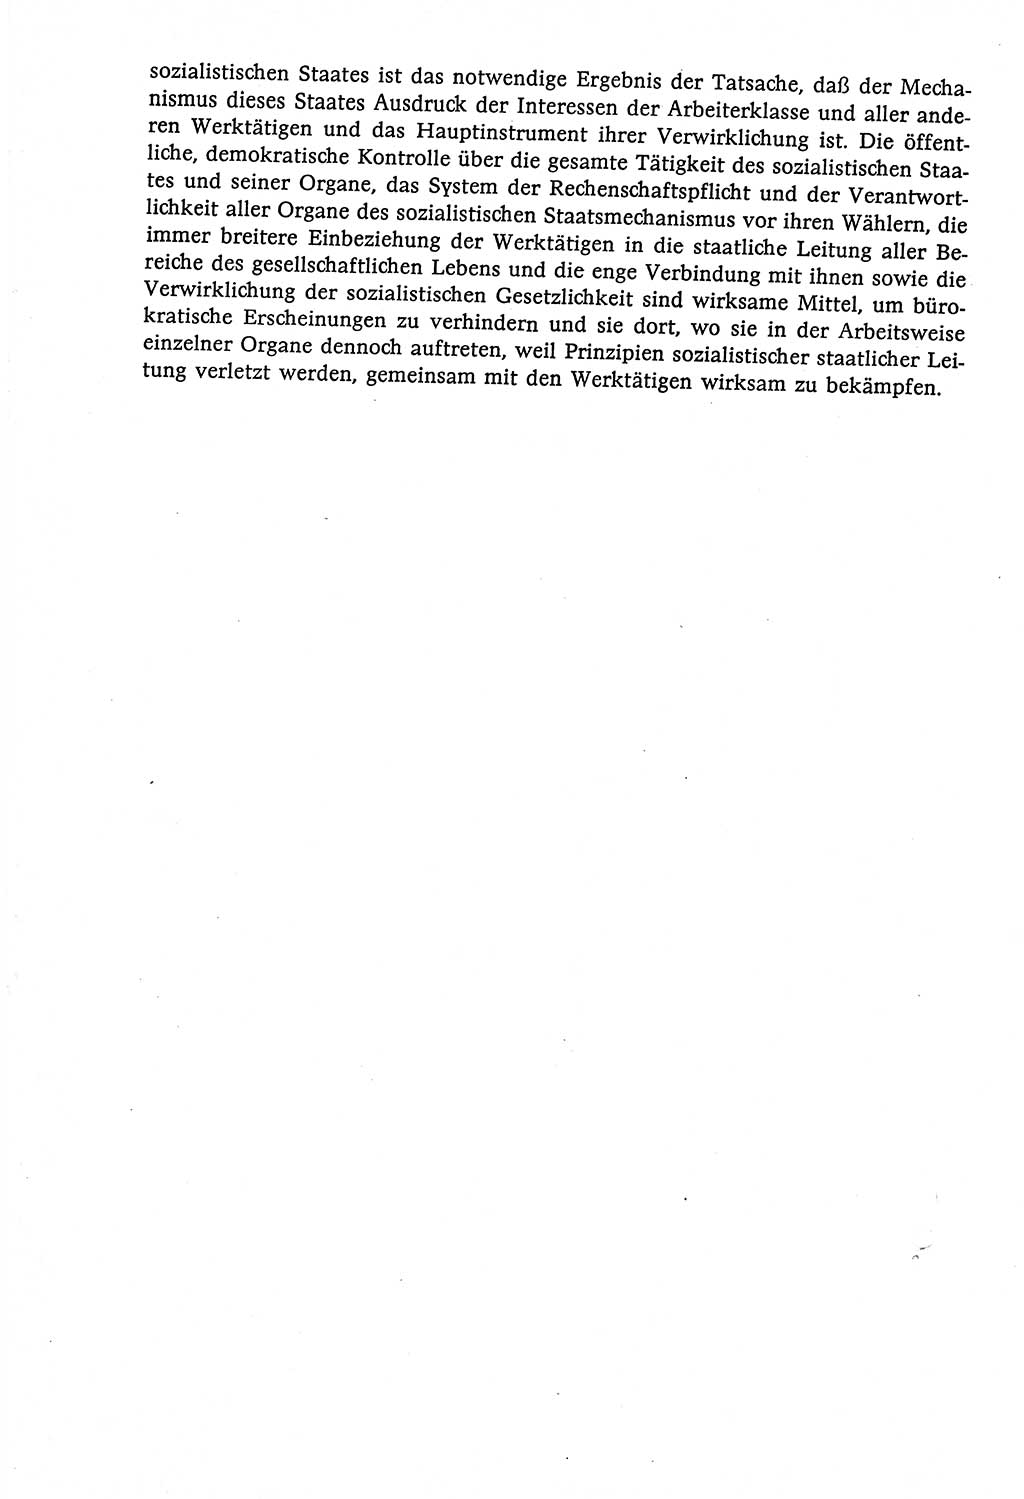 Marxistisch-leninistische (ML) Staats- und Rechtstheorie [Deutsche Demokratische Republik (DDR)], Lehrbuch 1980, Seite 378 (ML St.-R.-Th. DDR Lb. 1980, S. 378)